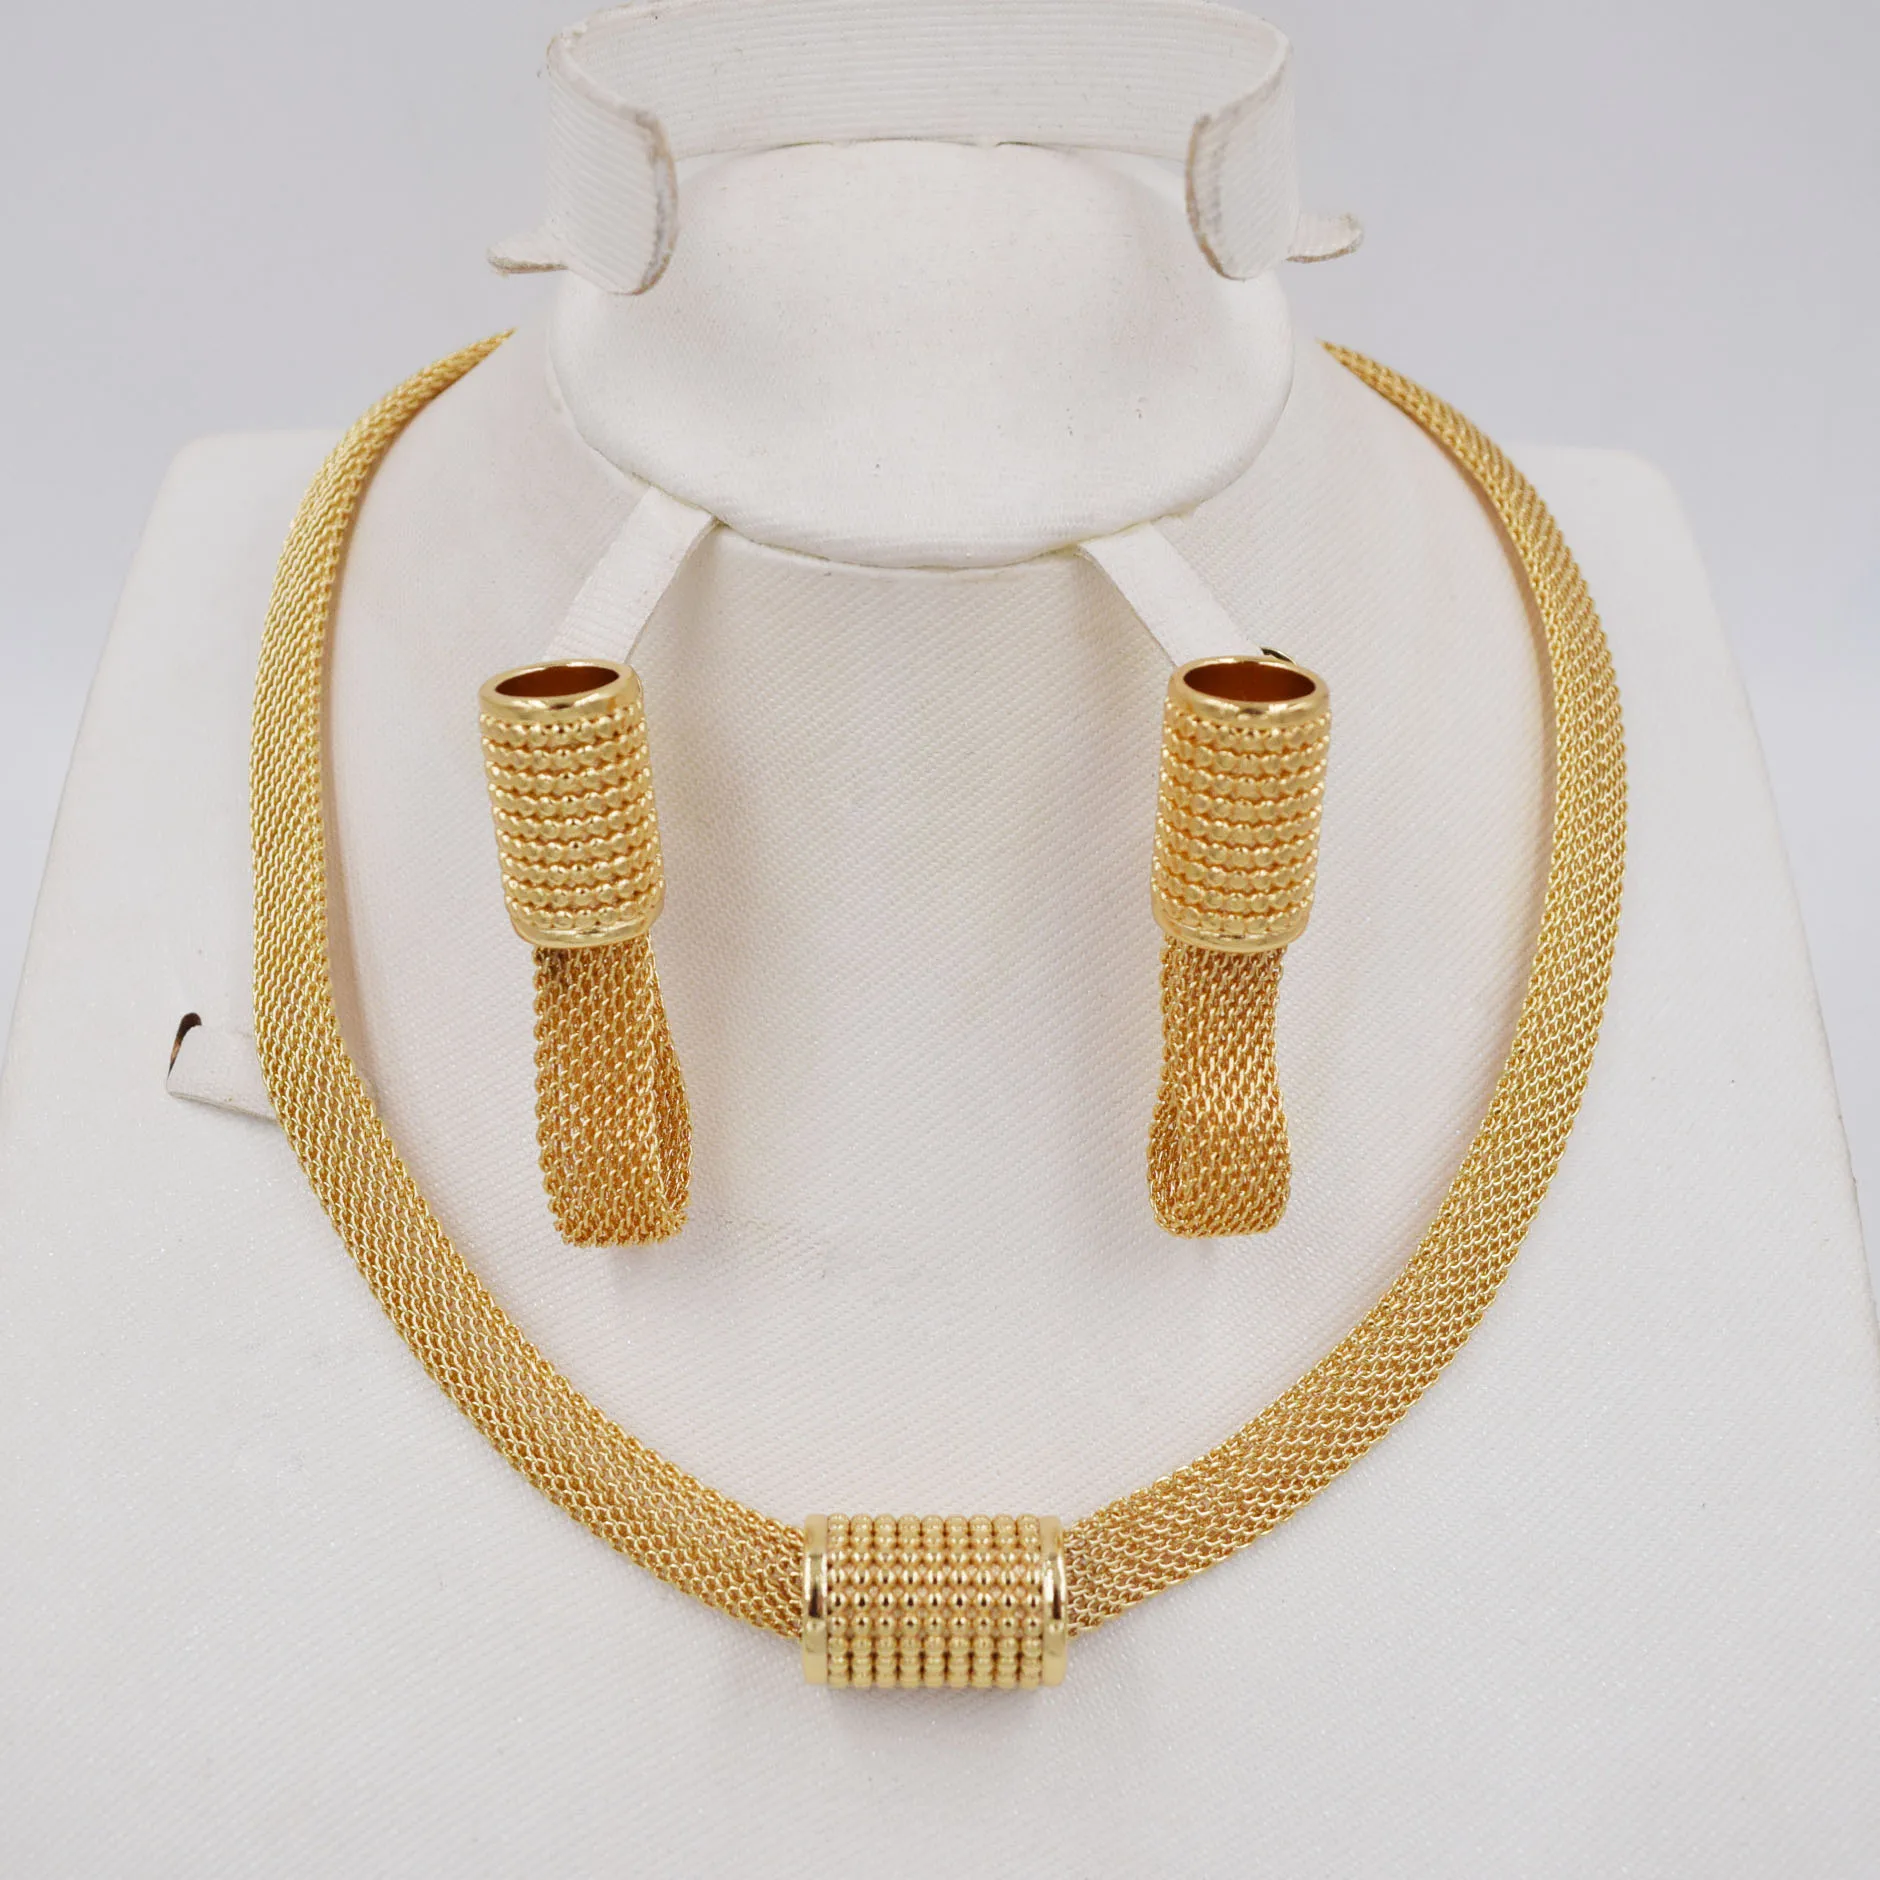 Высокое качество Ltaly 750 золотой цвет набор украшений для женщин африканские бусы ювелирные изделия ожерелье набор серьги ювелирные изделия